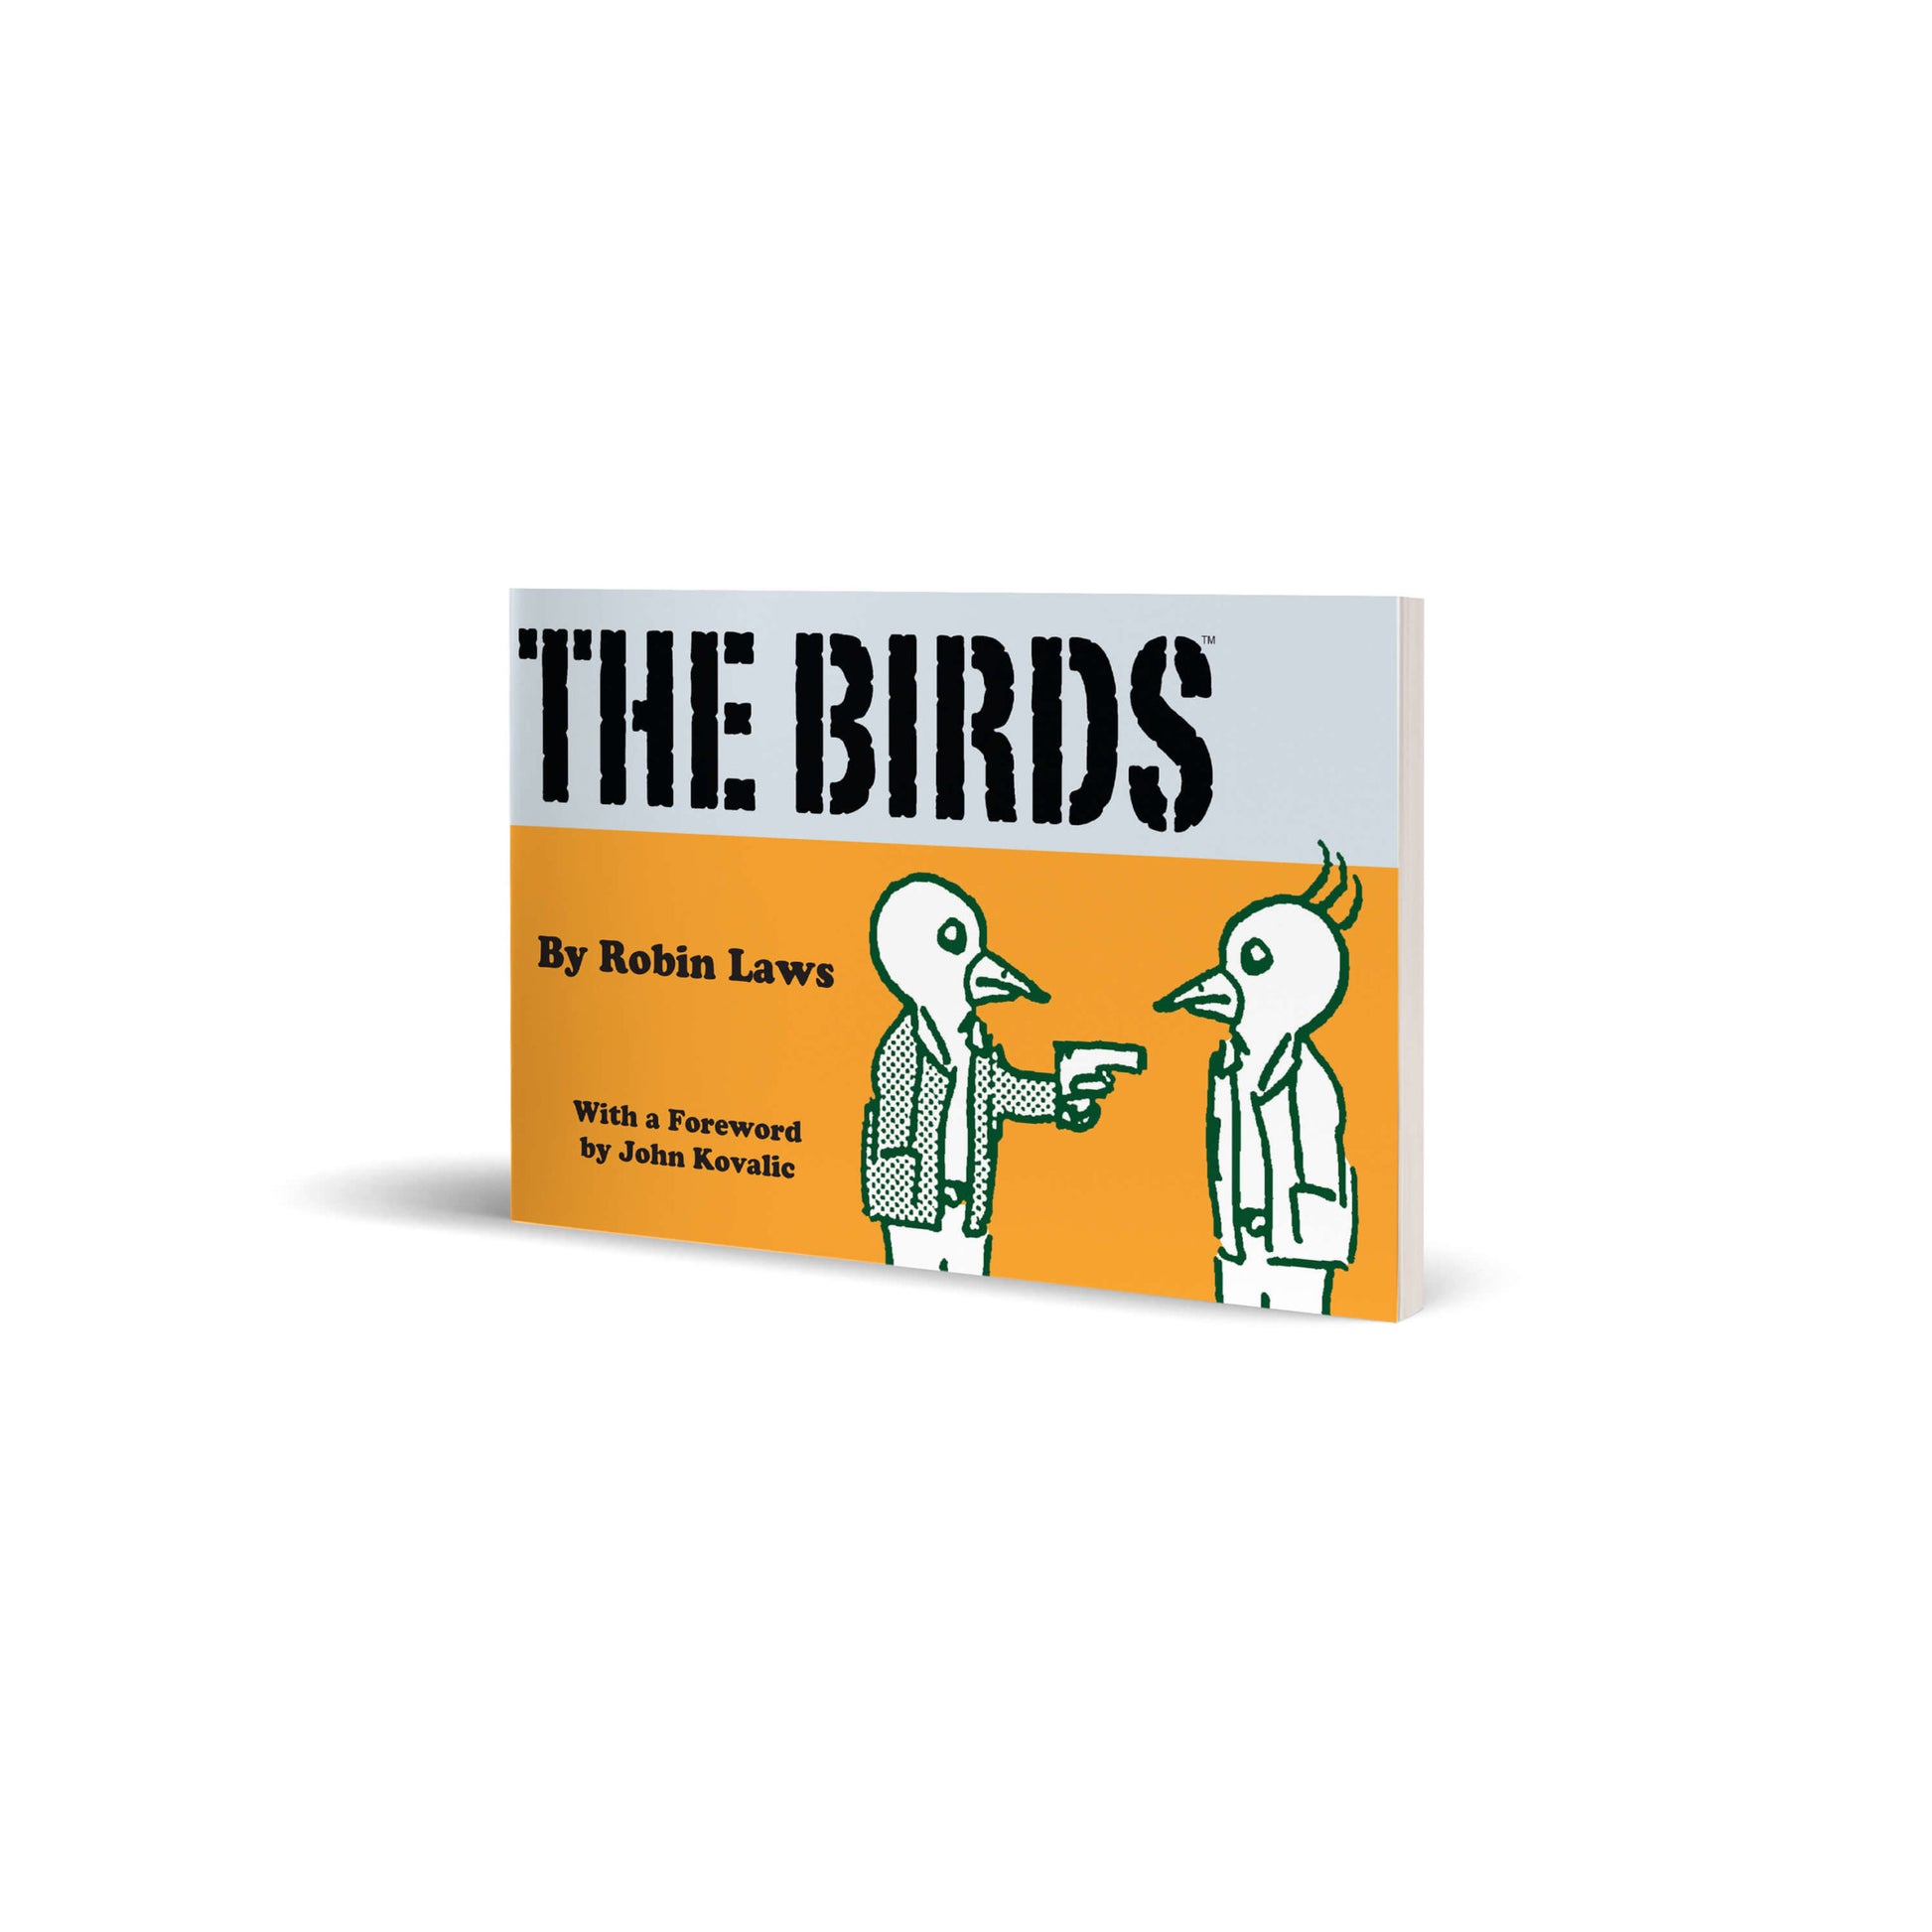 Robin Law's The Birds